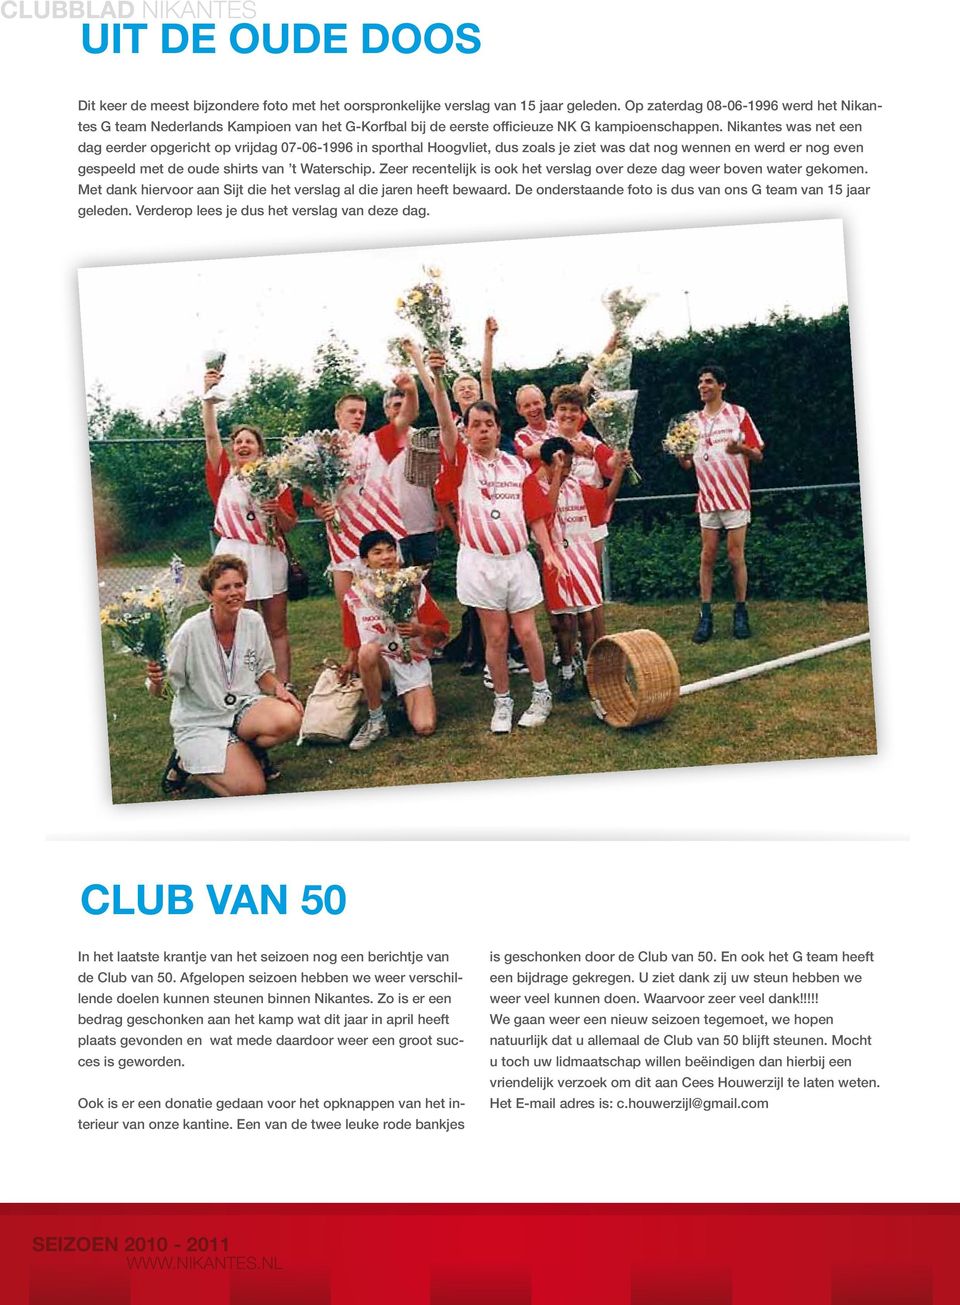 Nikantes was net een dag eerder opgericht op vrijdag 07-06-1996 in sporthal Hoogvliet, dus zoals je ziet was dat nog wennen en werd er nog even gespeeld met de oude shirts van t Waterschip.